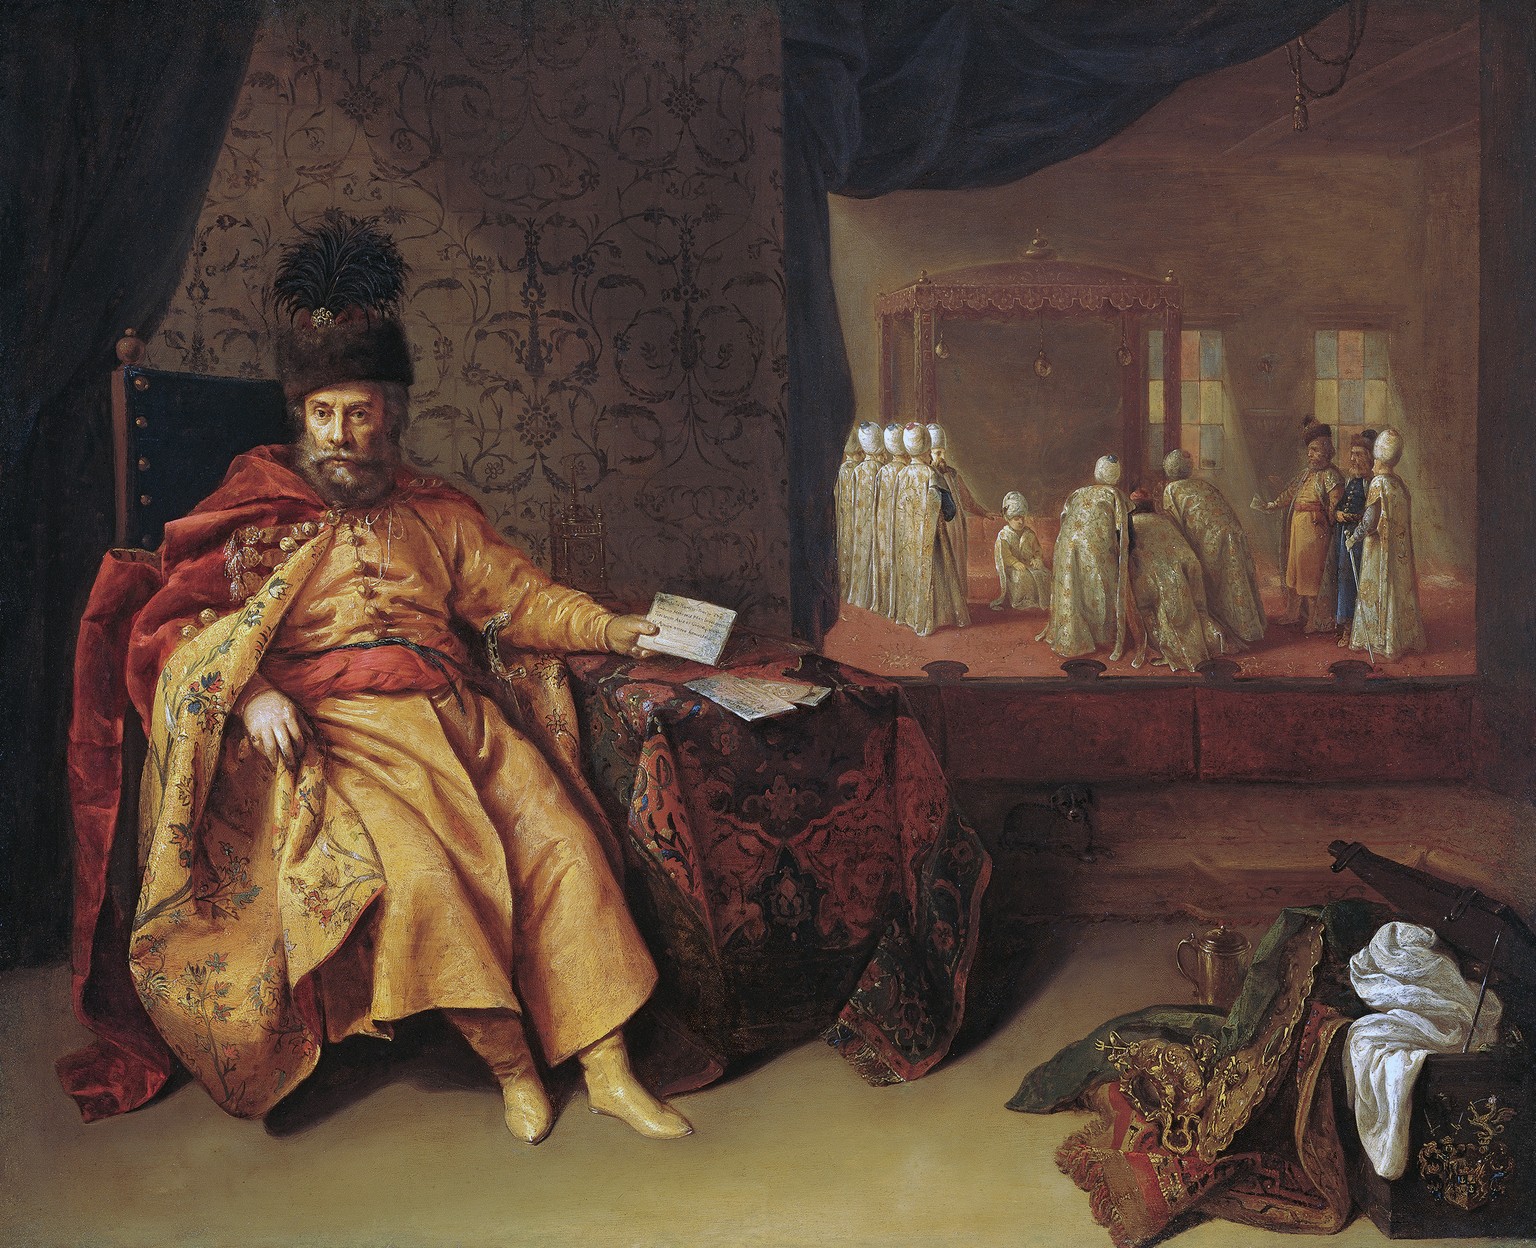 Johann Rudolf Schmid von Schwarzenhorn als kaiserlicher Grossbotschafter um 1651. Er hält ein Schreiben an den Sultan in der Hand. Gemälde von Jeronimus Joachims, 1651.